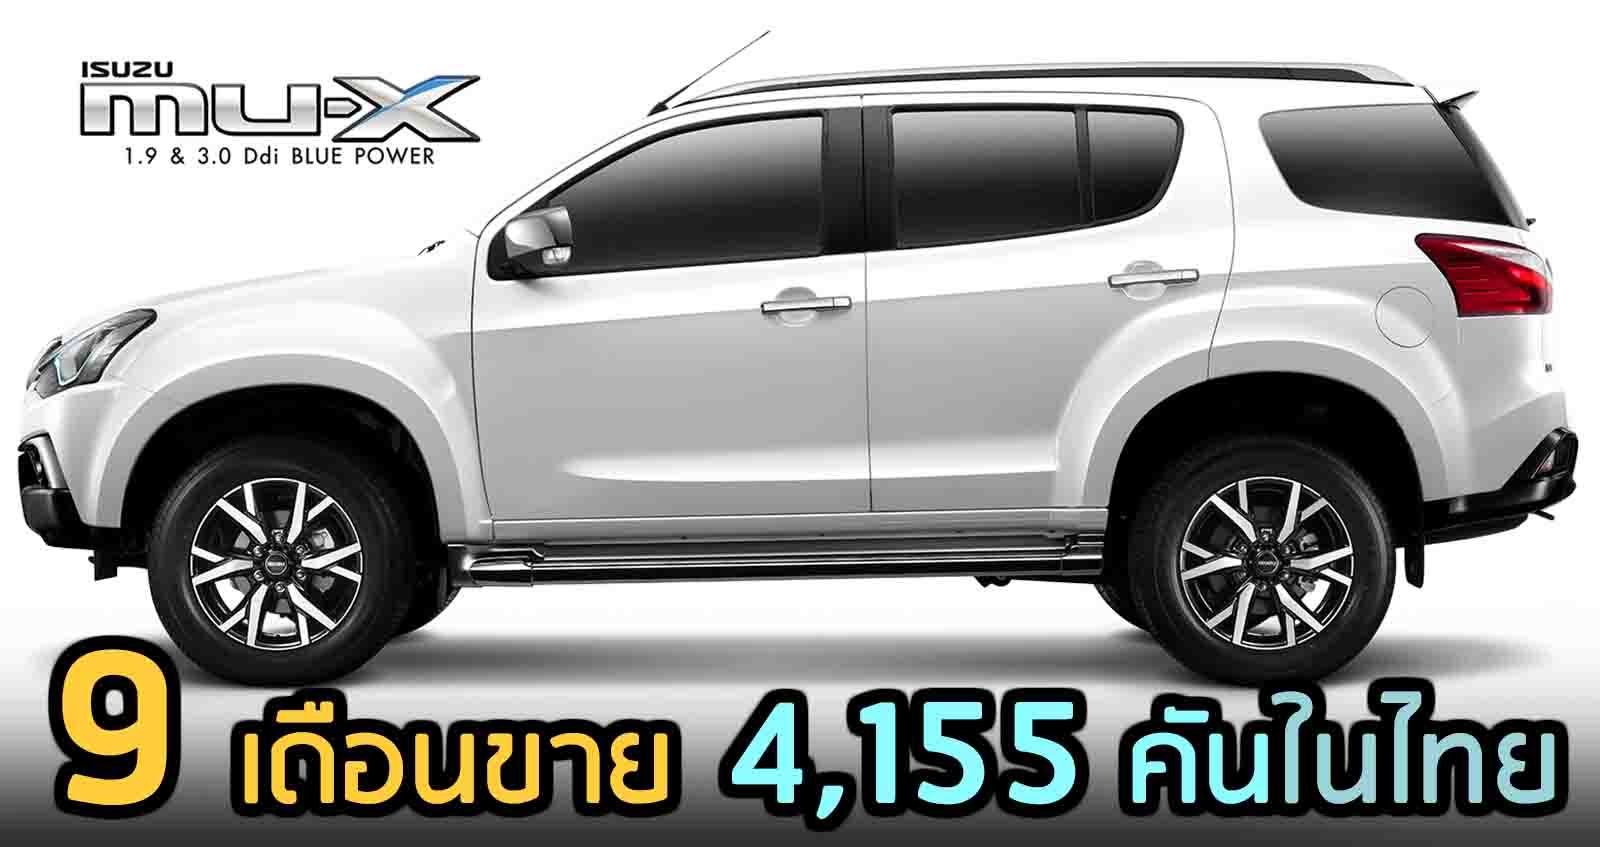 9 เดือนขาย 4,155 คัน ISUZU MU-X ปี 2020 ในไทย